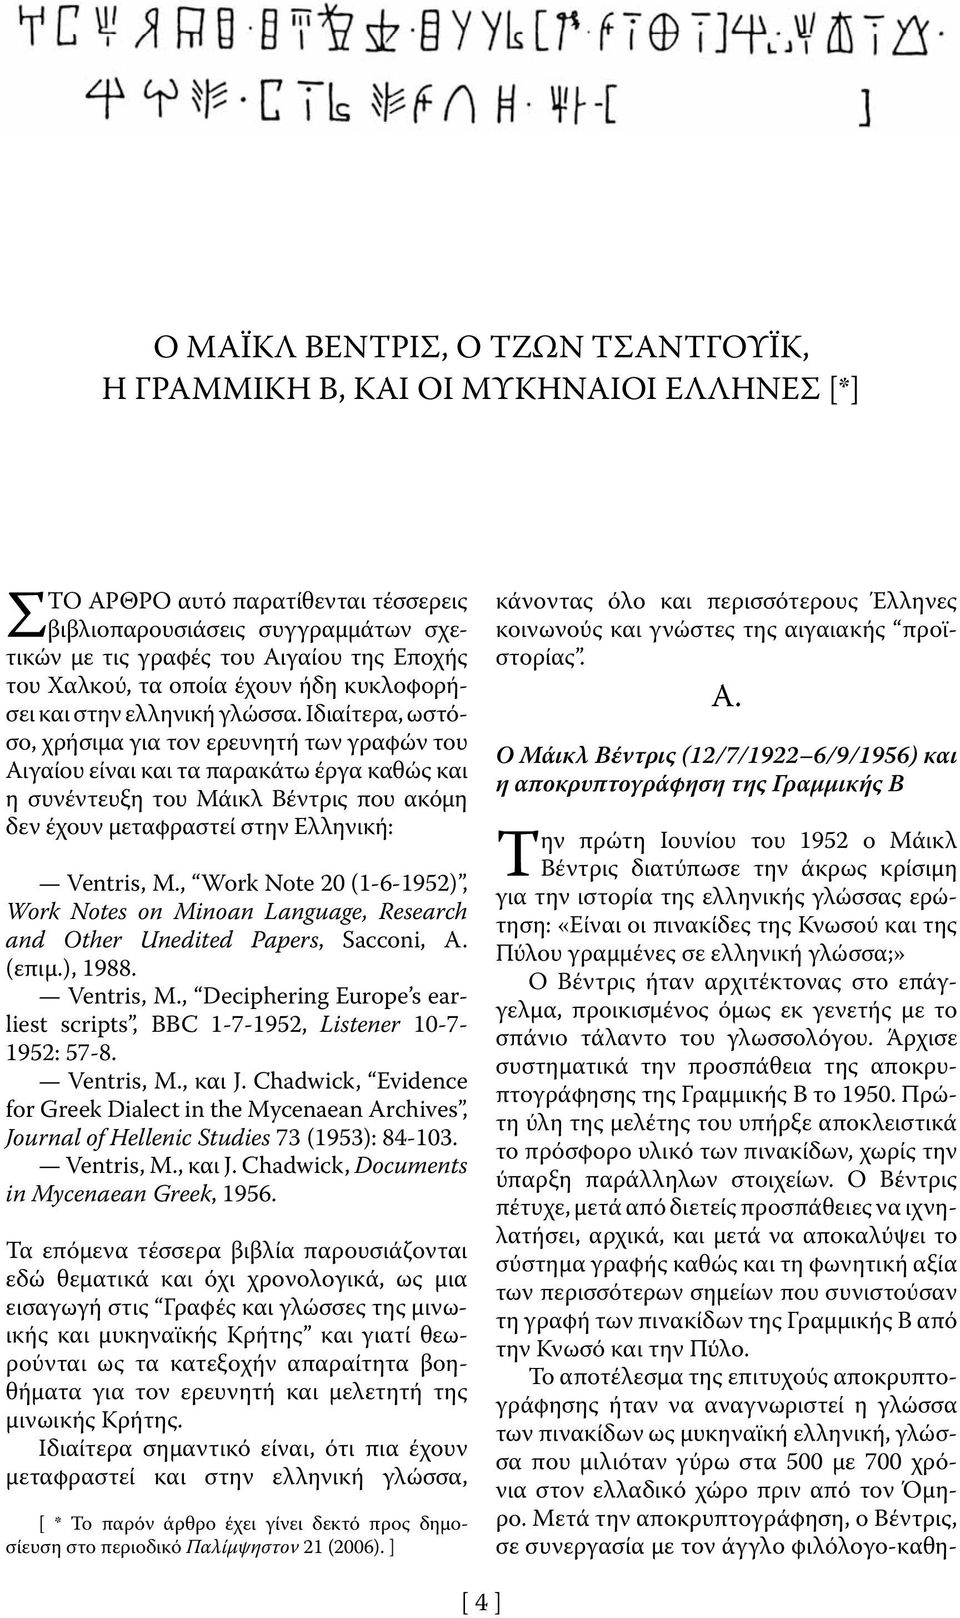 Ιδιαίτερα, ωστόσο, χρήσιμα για τον ερευνητή των γραφών του Αιγαίου είναι και τα παρακάτω έργα καθώς και η συνέντευξη του Μάικλ Βέντρις που ακόμη δεν έχουν μεταφραστεί στην Ελληνική: Ventris, M.